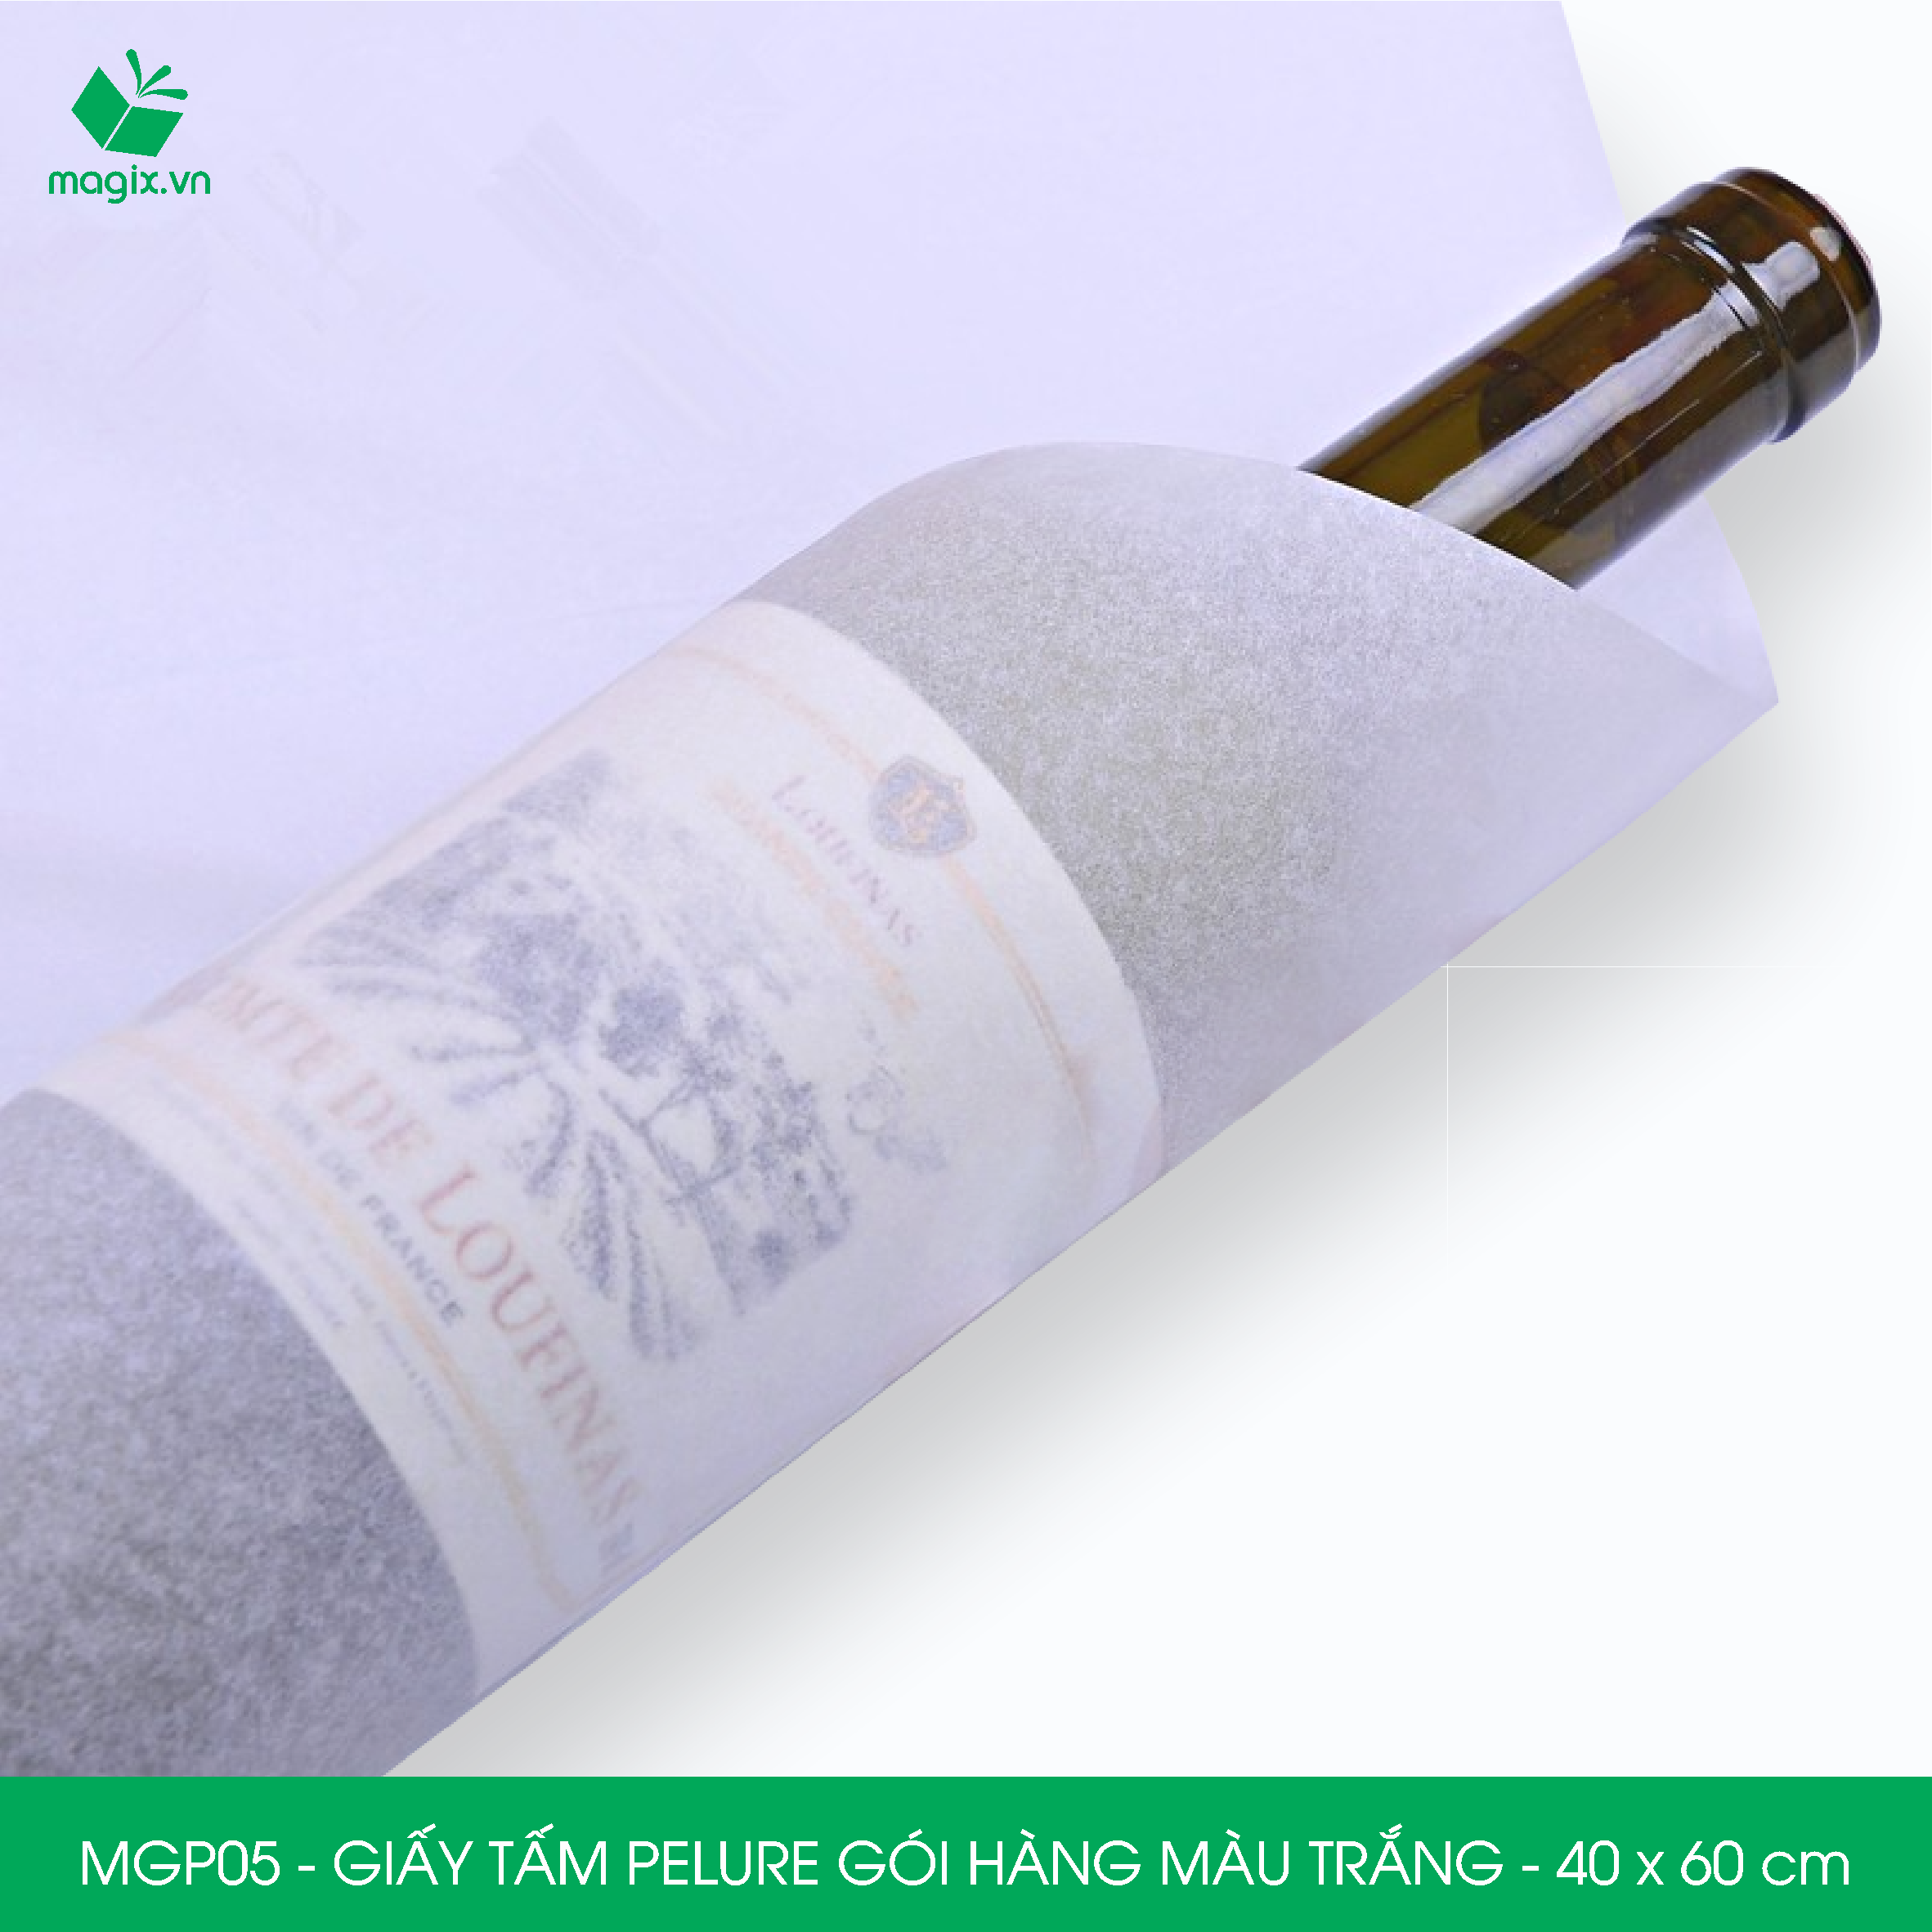 MGP05 - 40x60 cm - 100 tấm giấy Pelure trắng gói hàng, giấy chống ẩm 2 mặt mịn, giấy bọc hàng thời trang